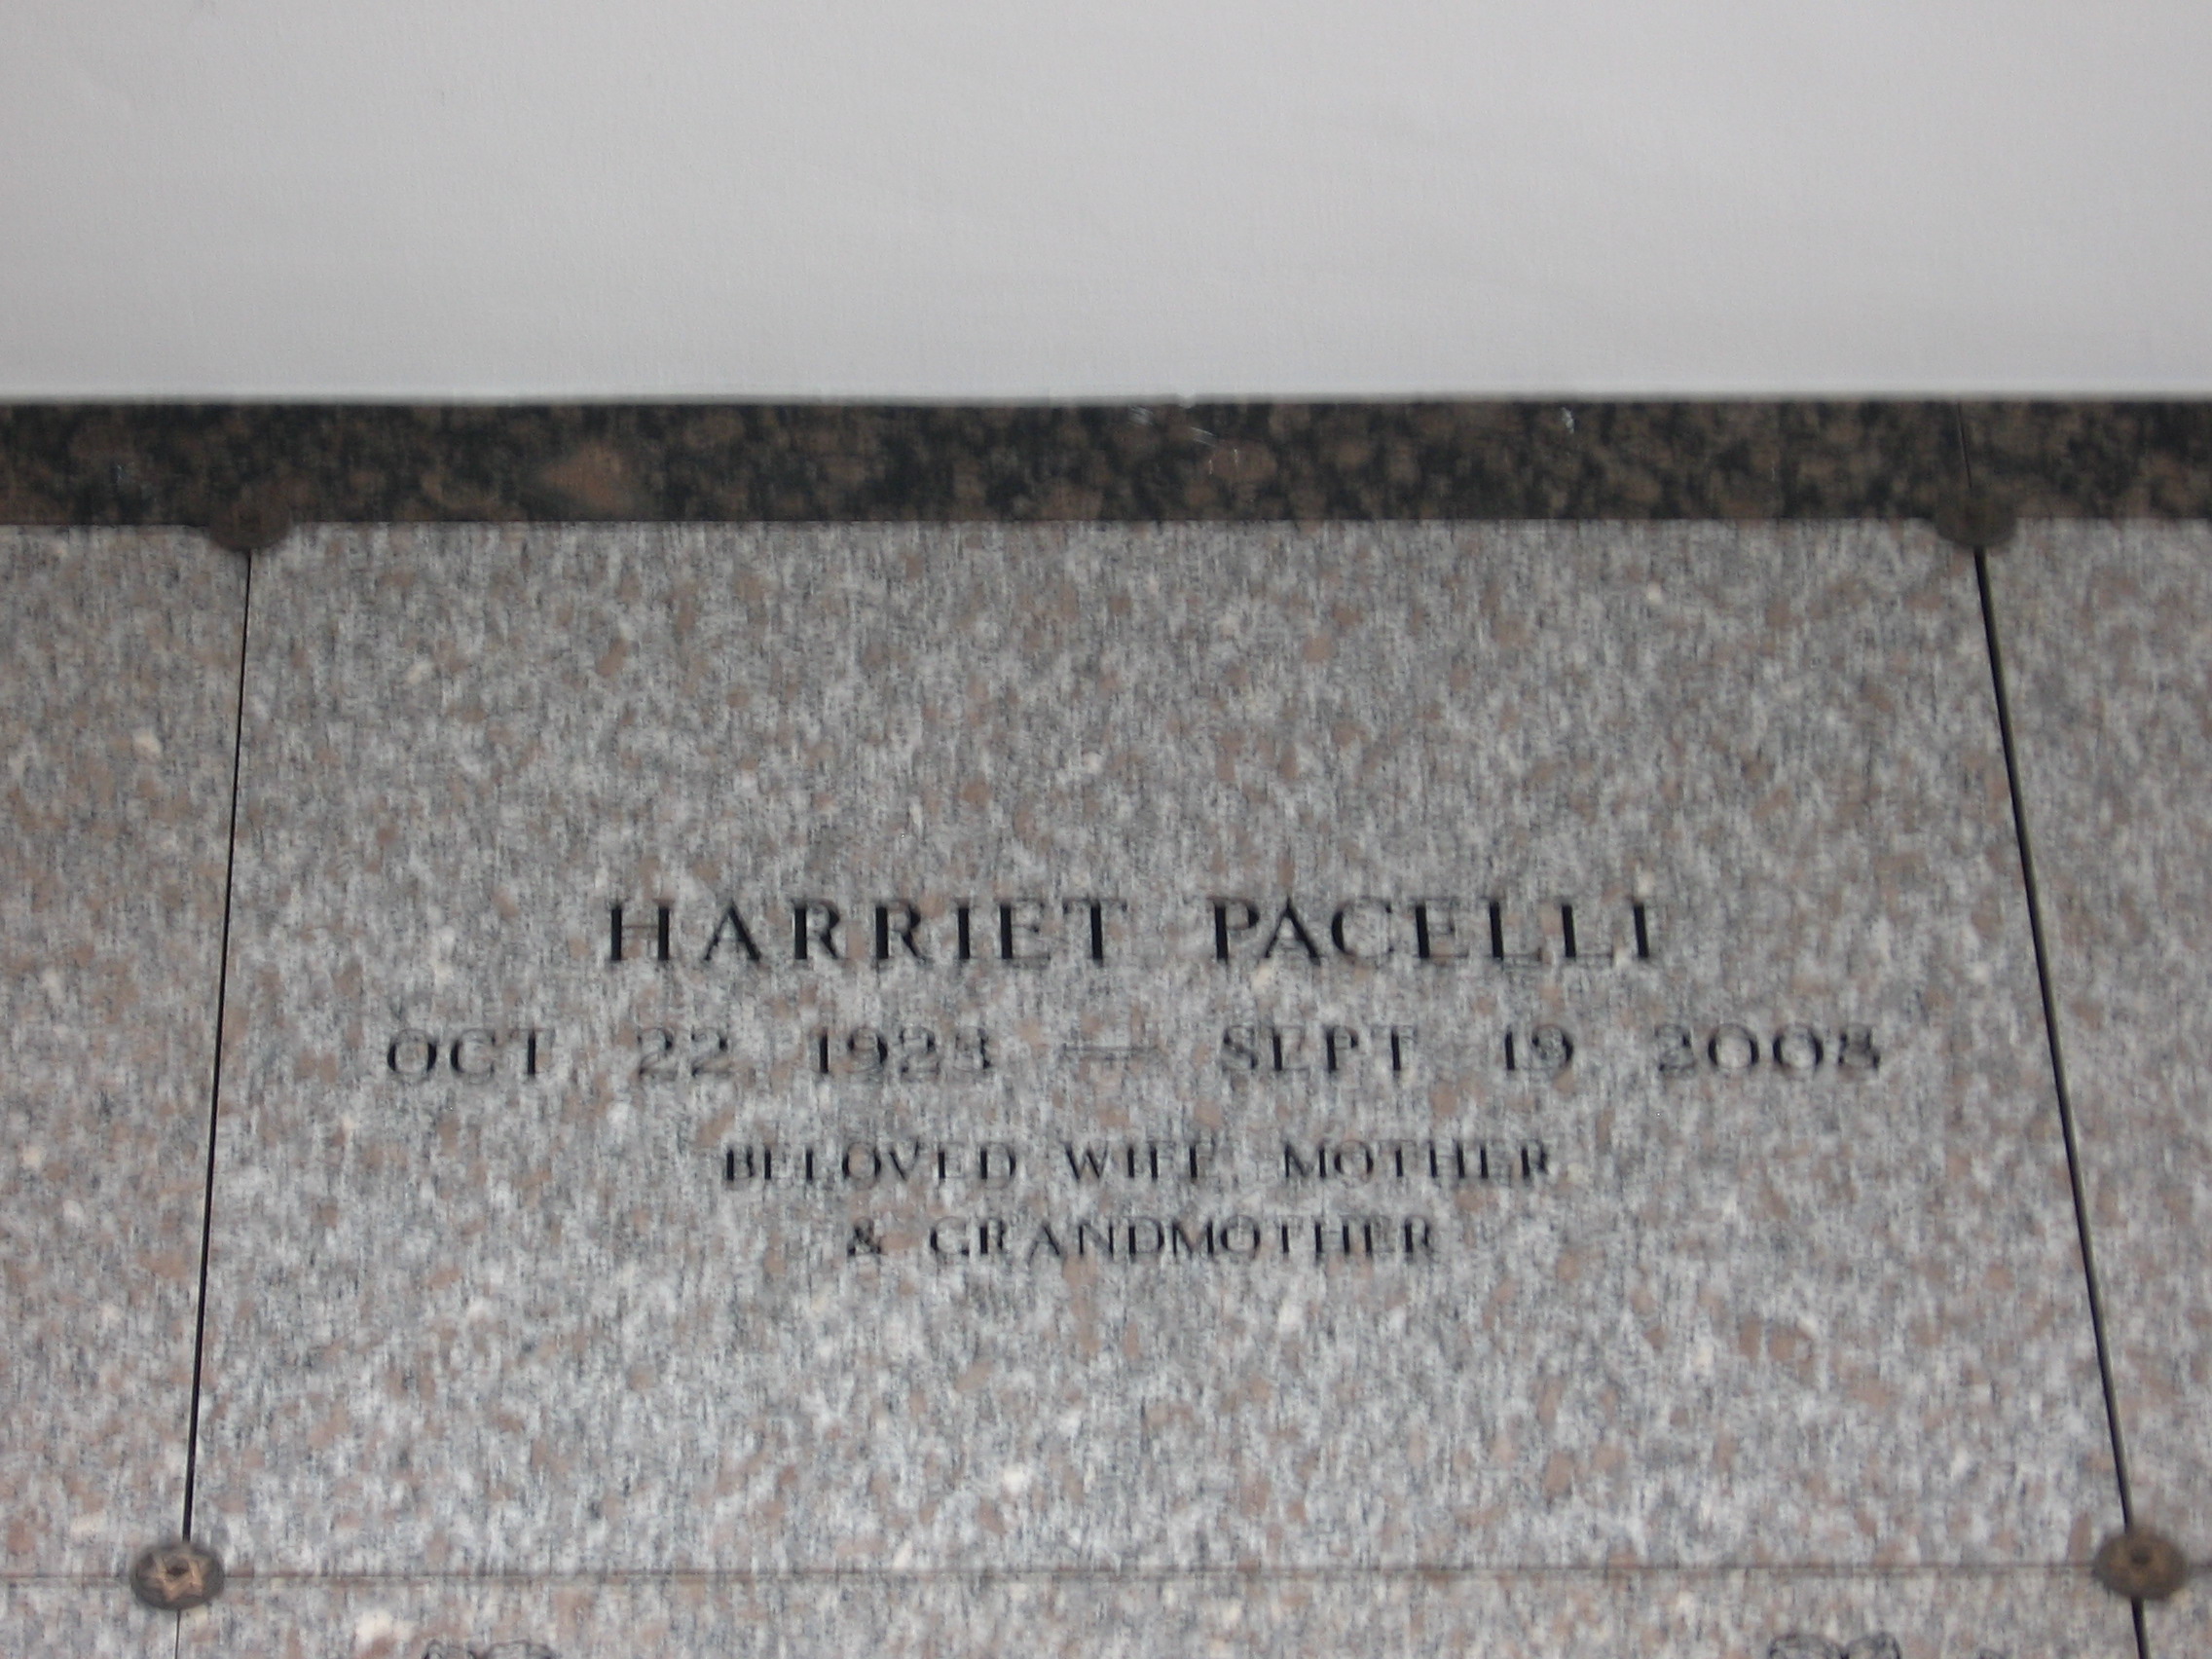 Harriet Pacelli